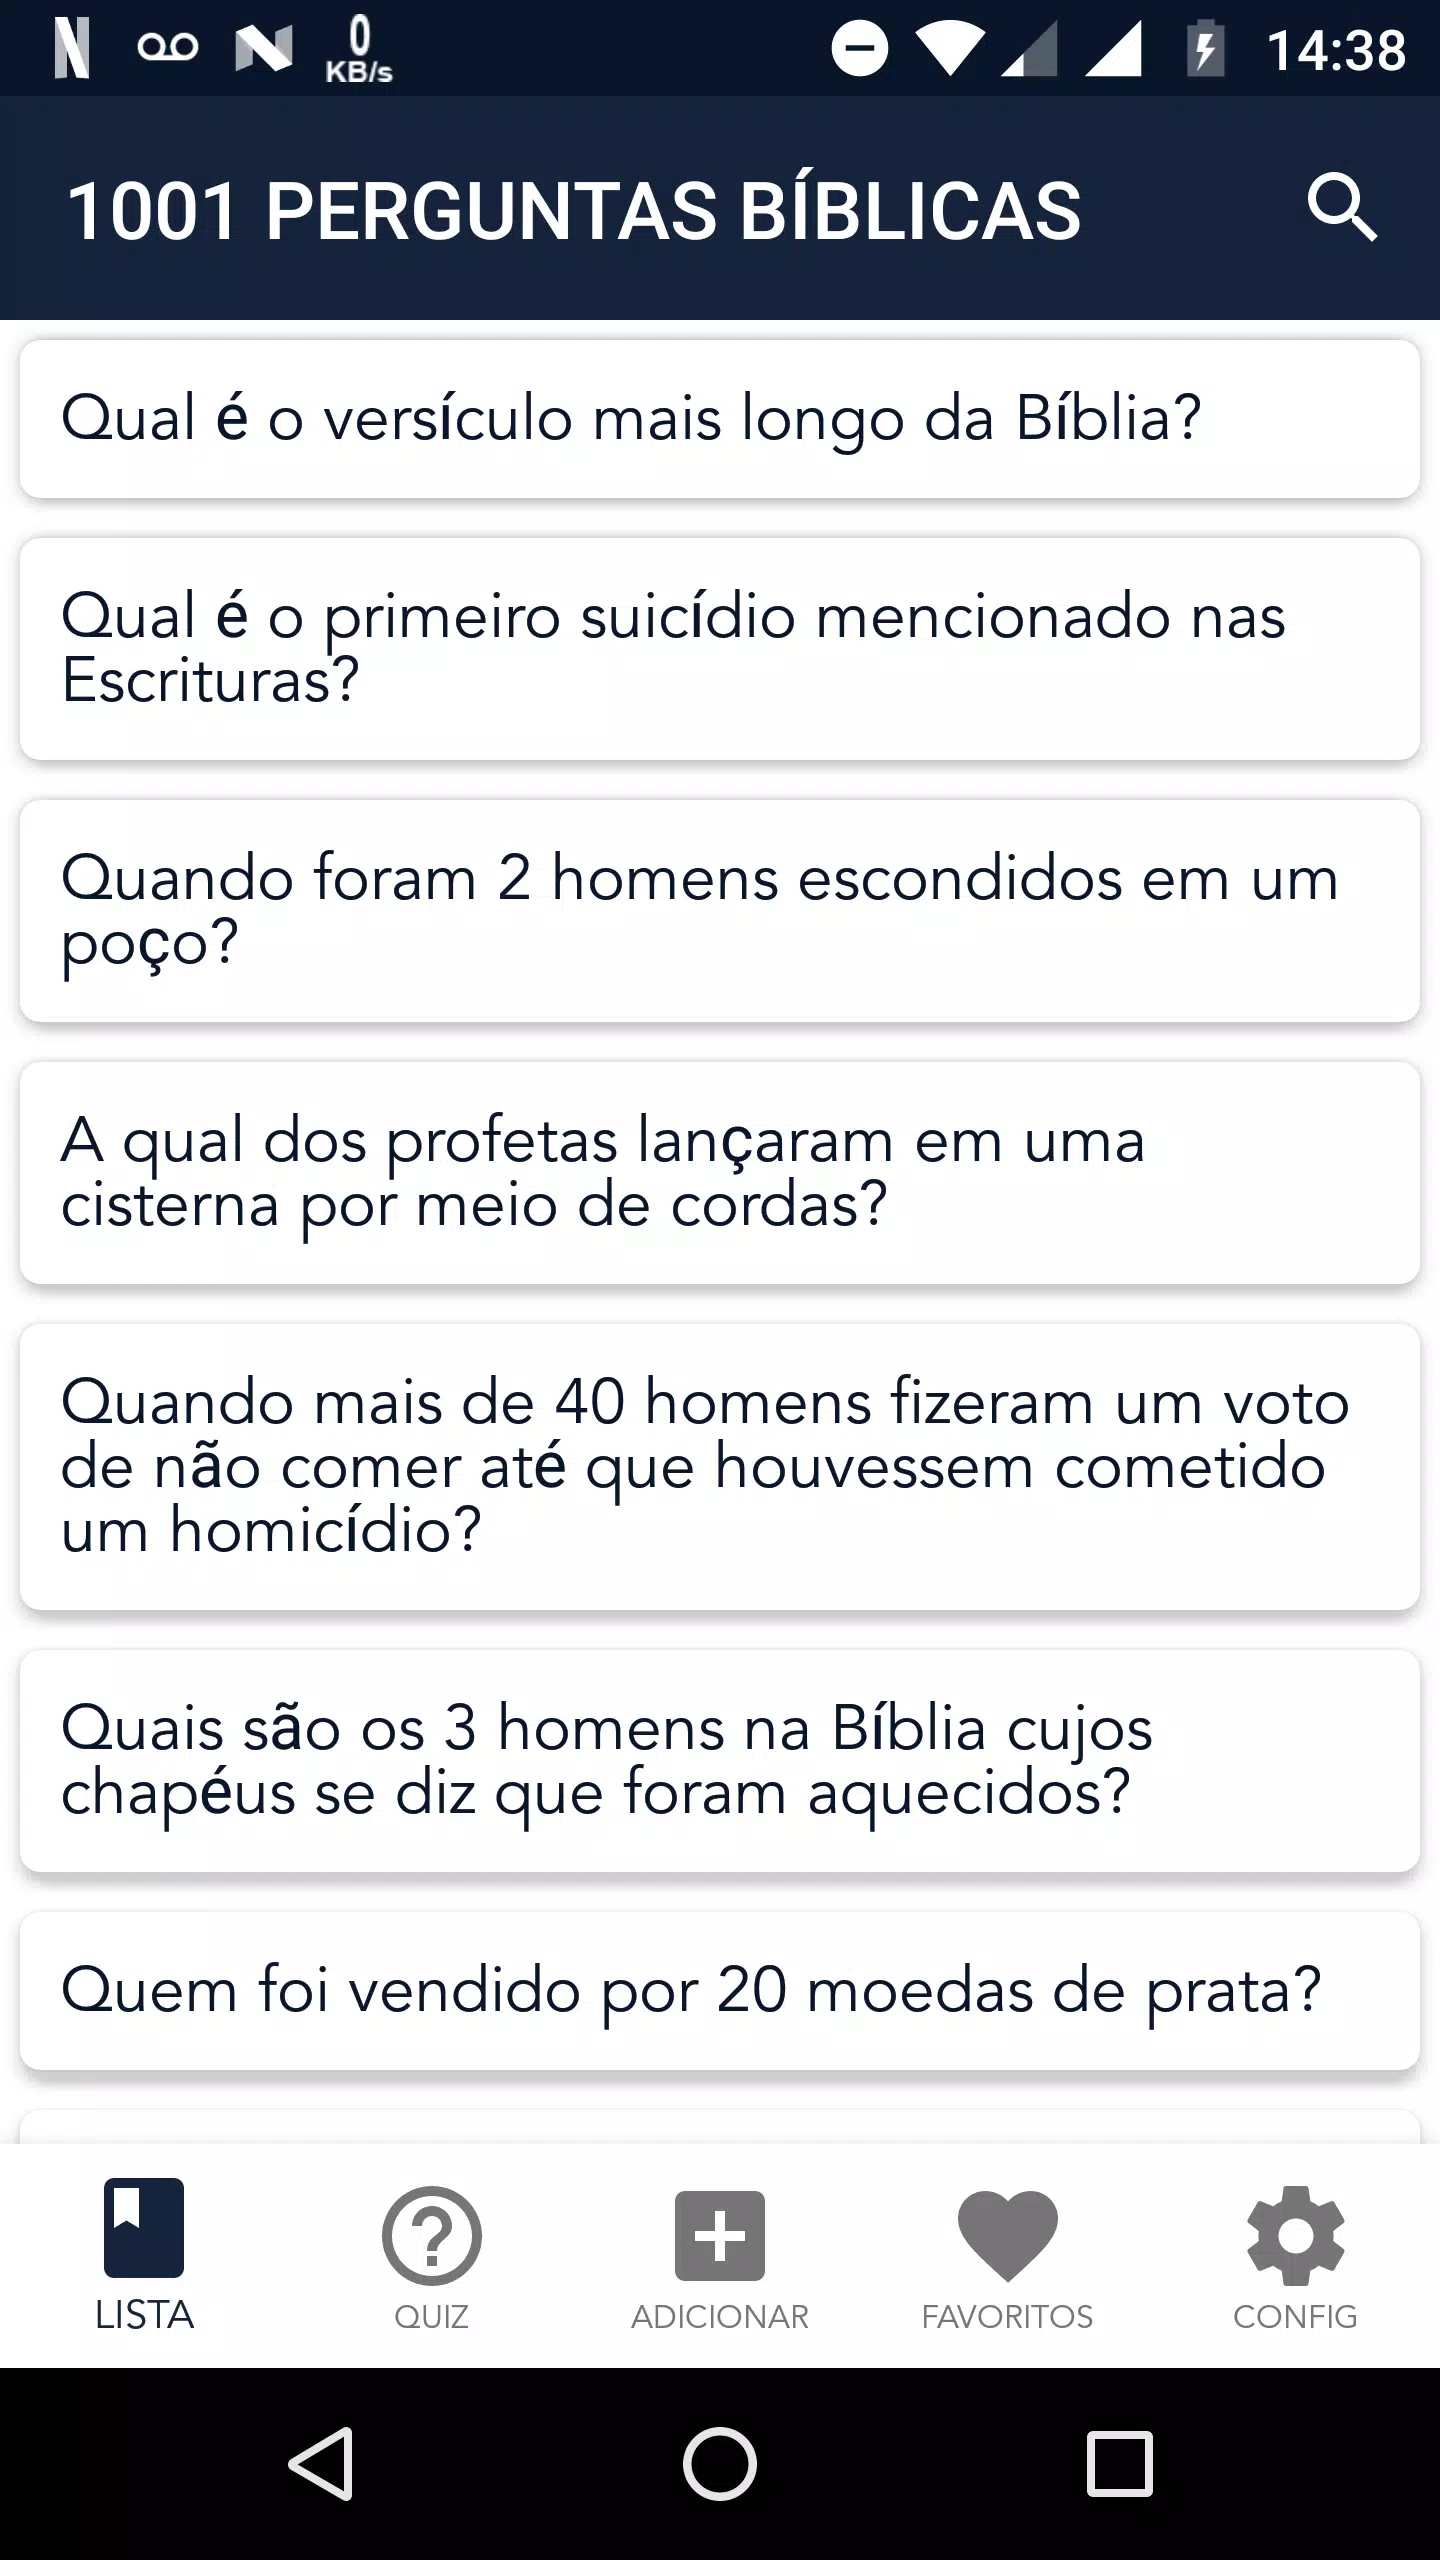 Download do APK de Perguntas e Respostas Bíblia para Android